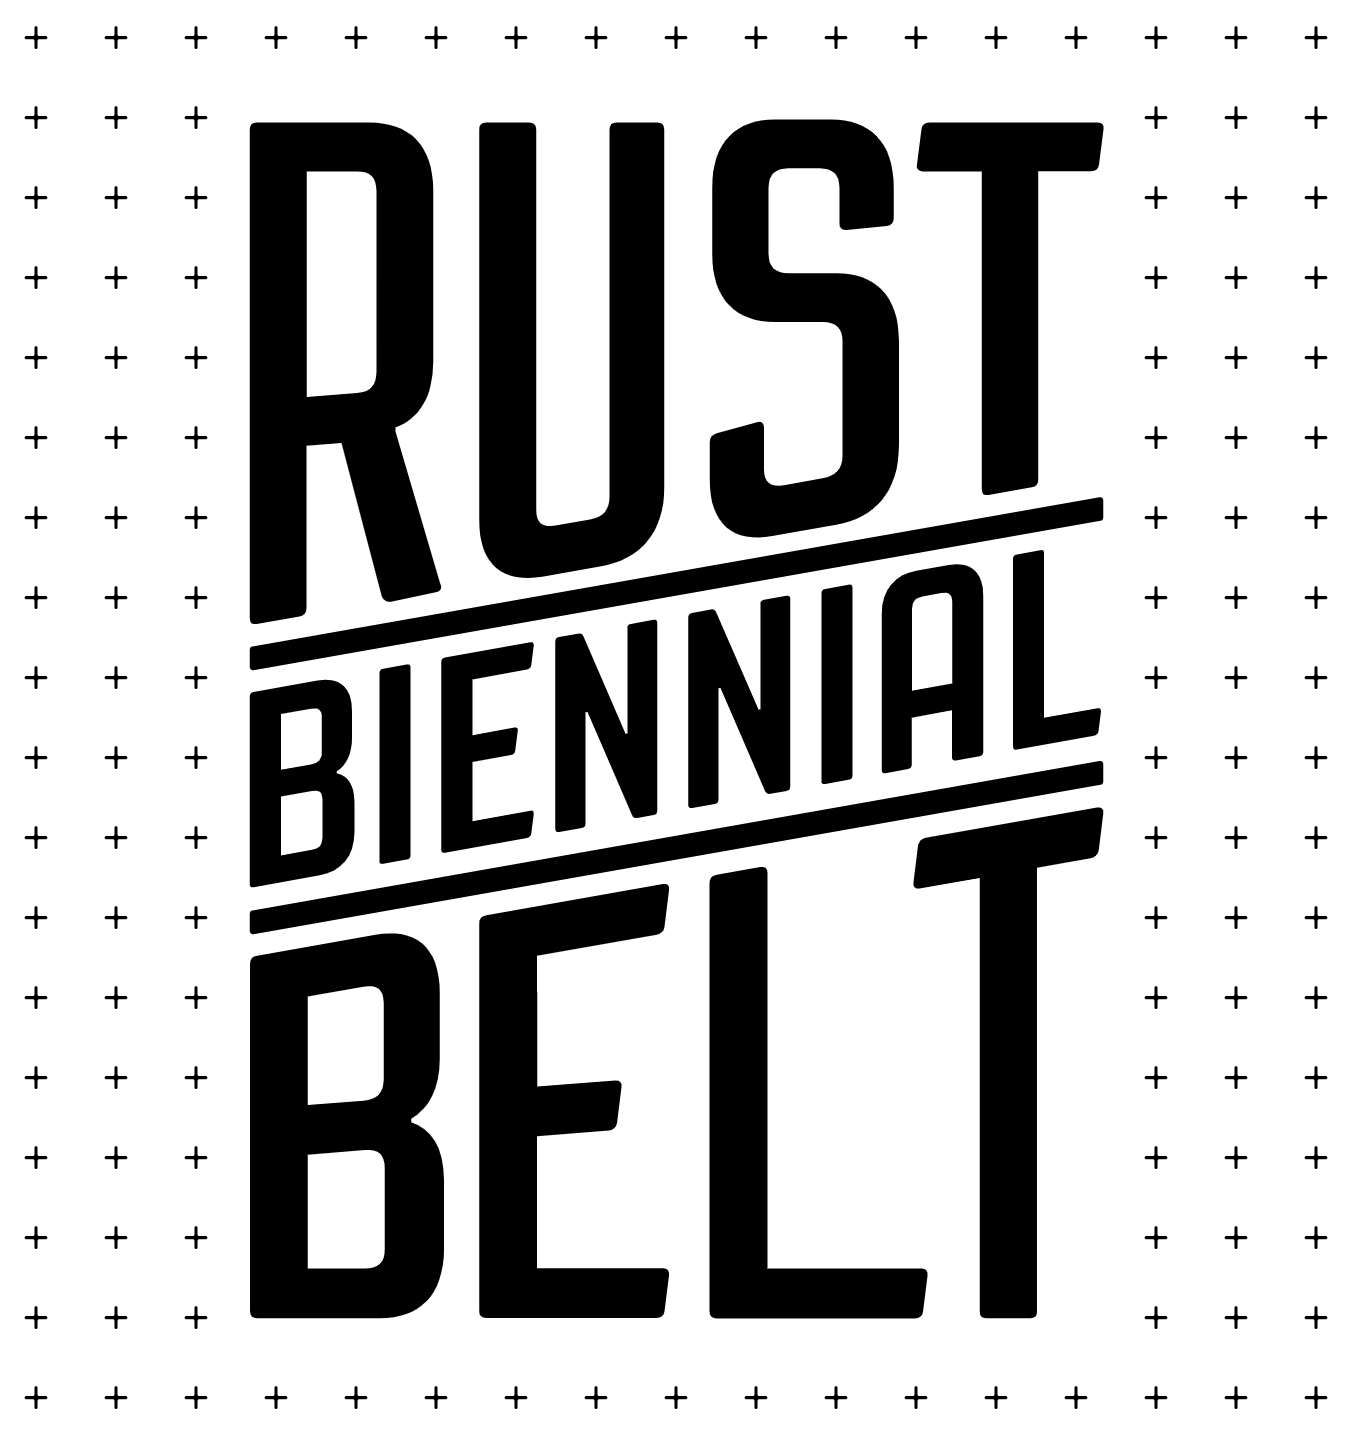 Belt of rust фото 74